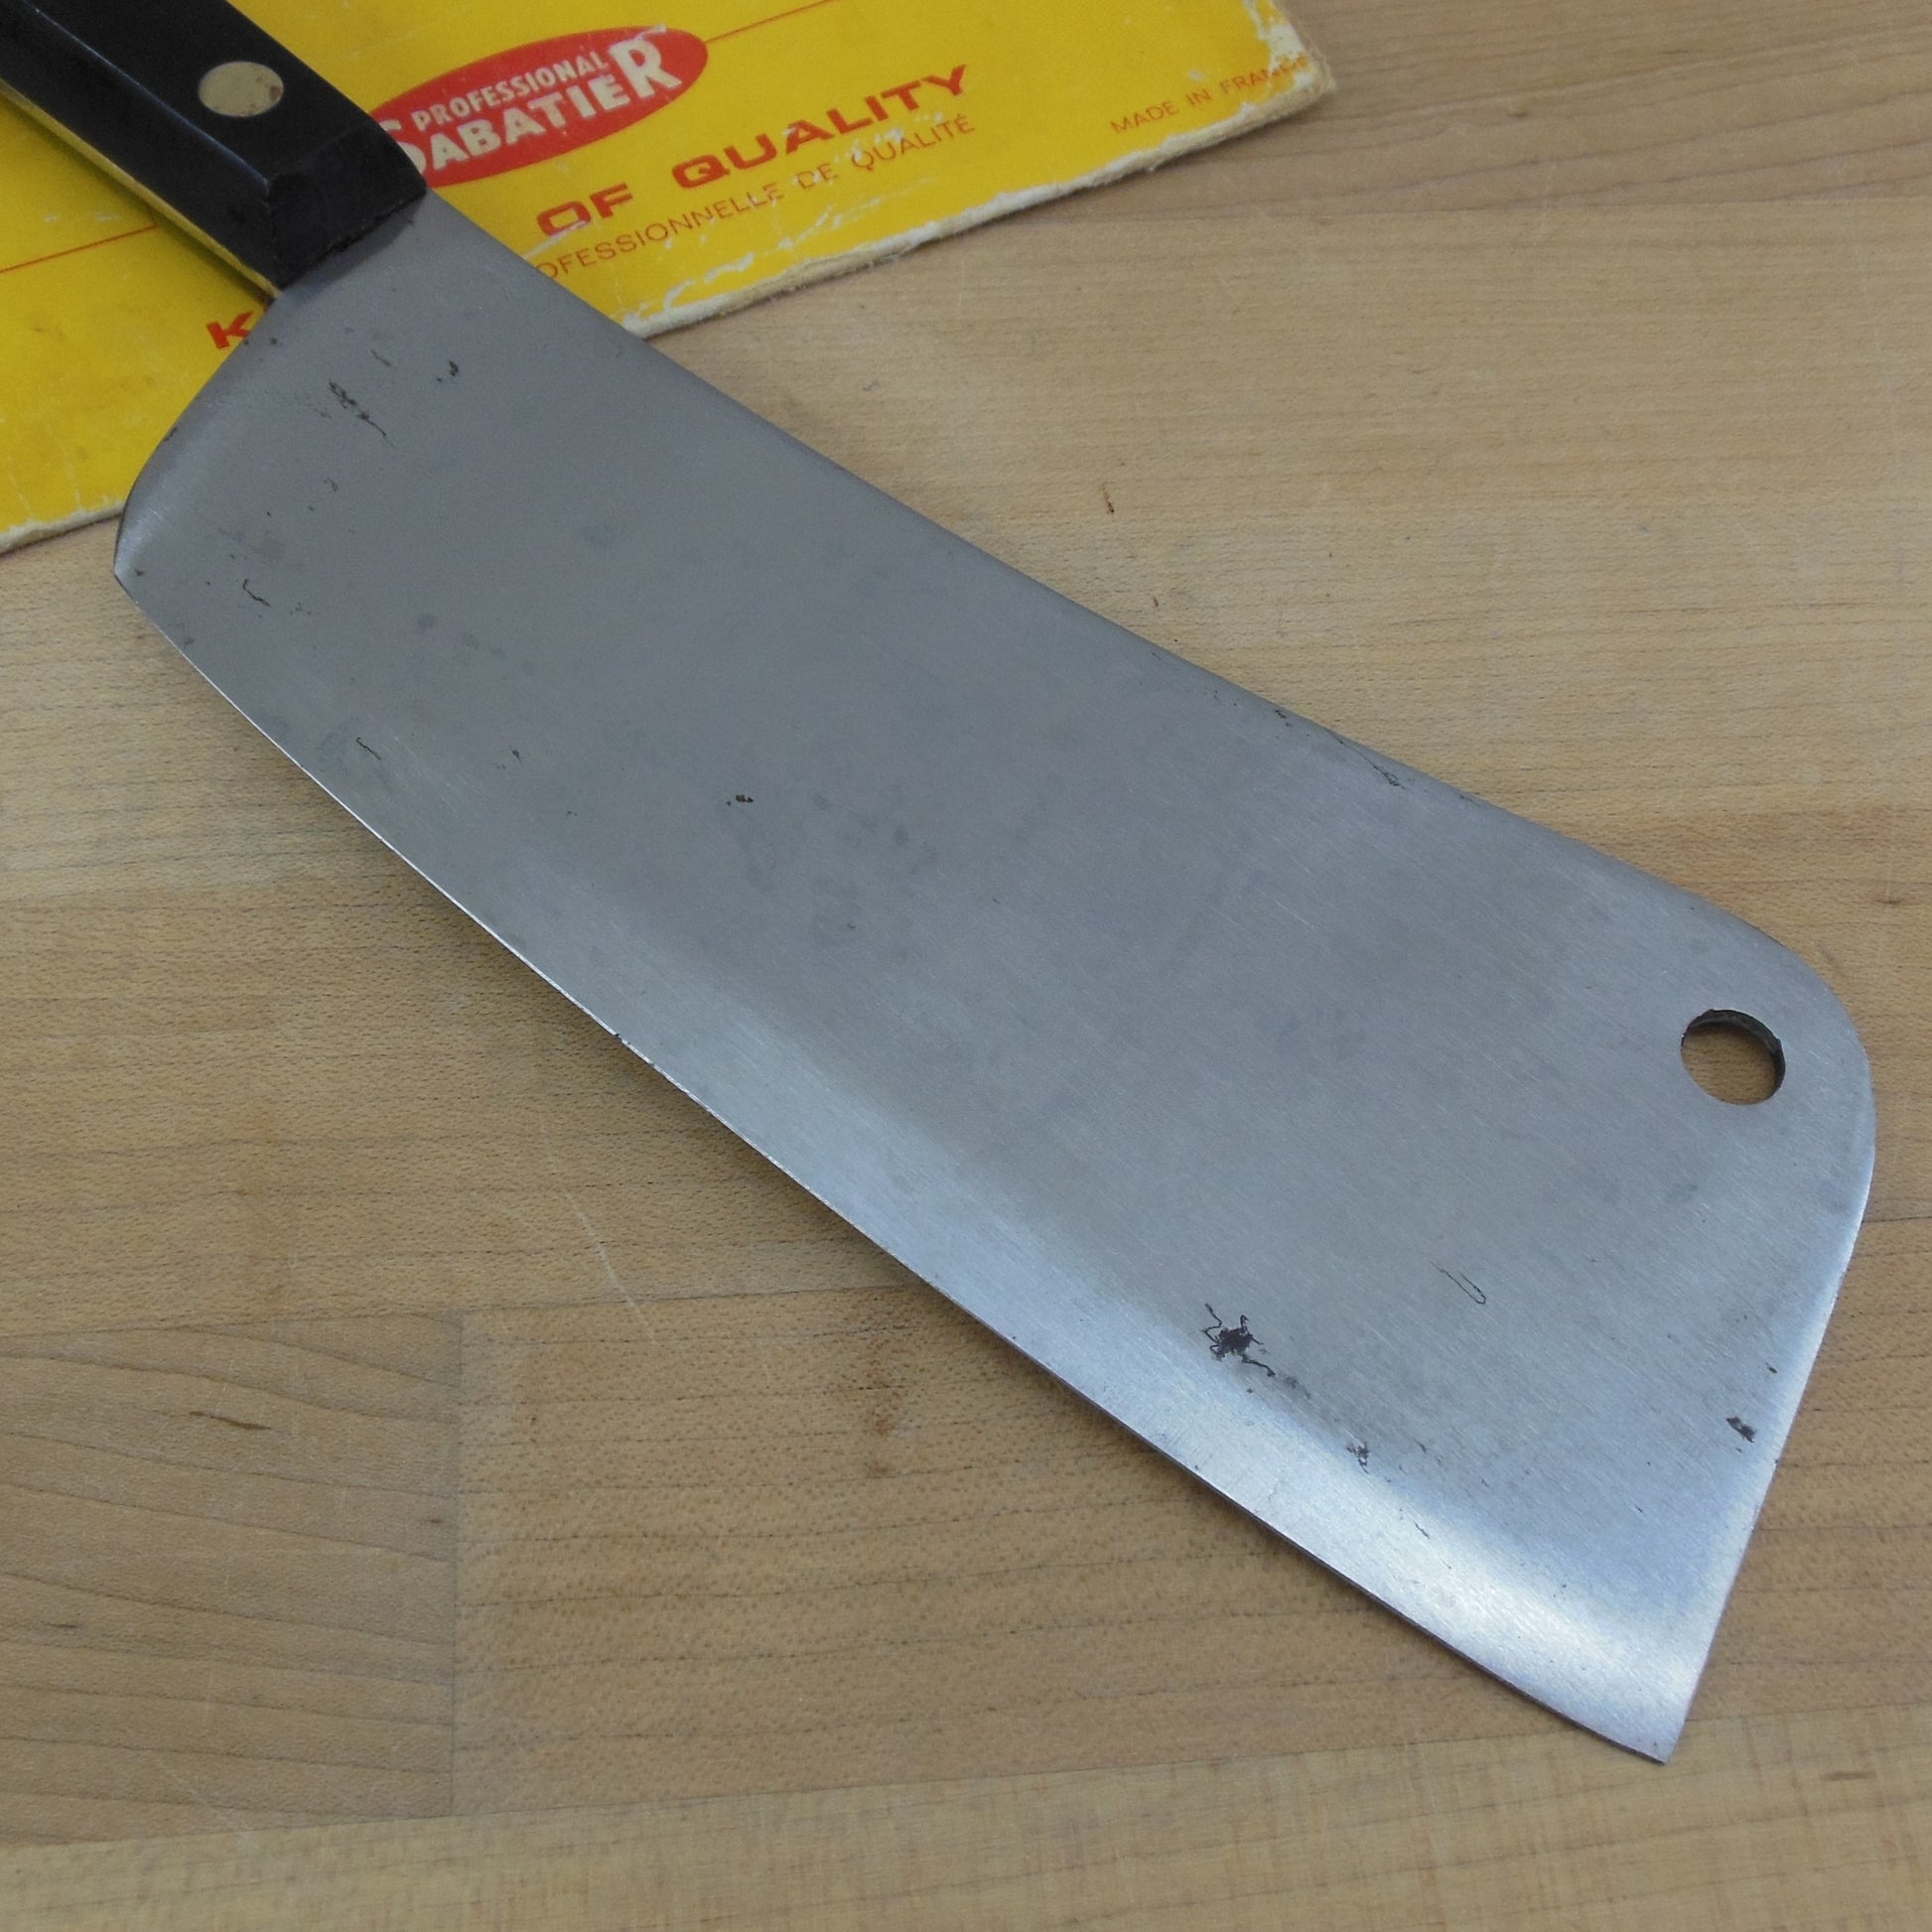 Vintage Sabatier Knives – Sabatier Knife Shop